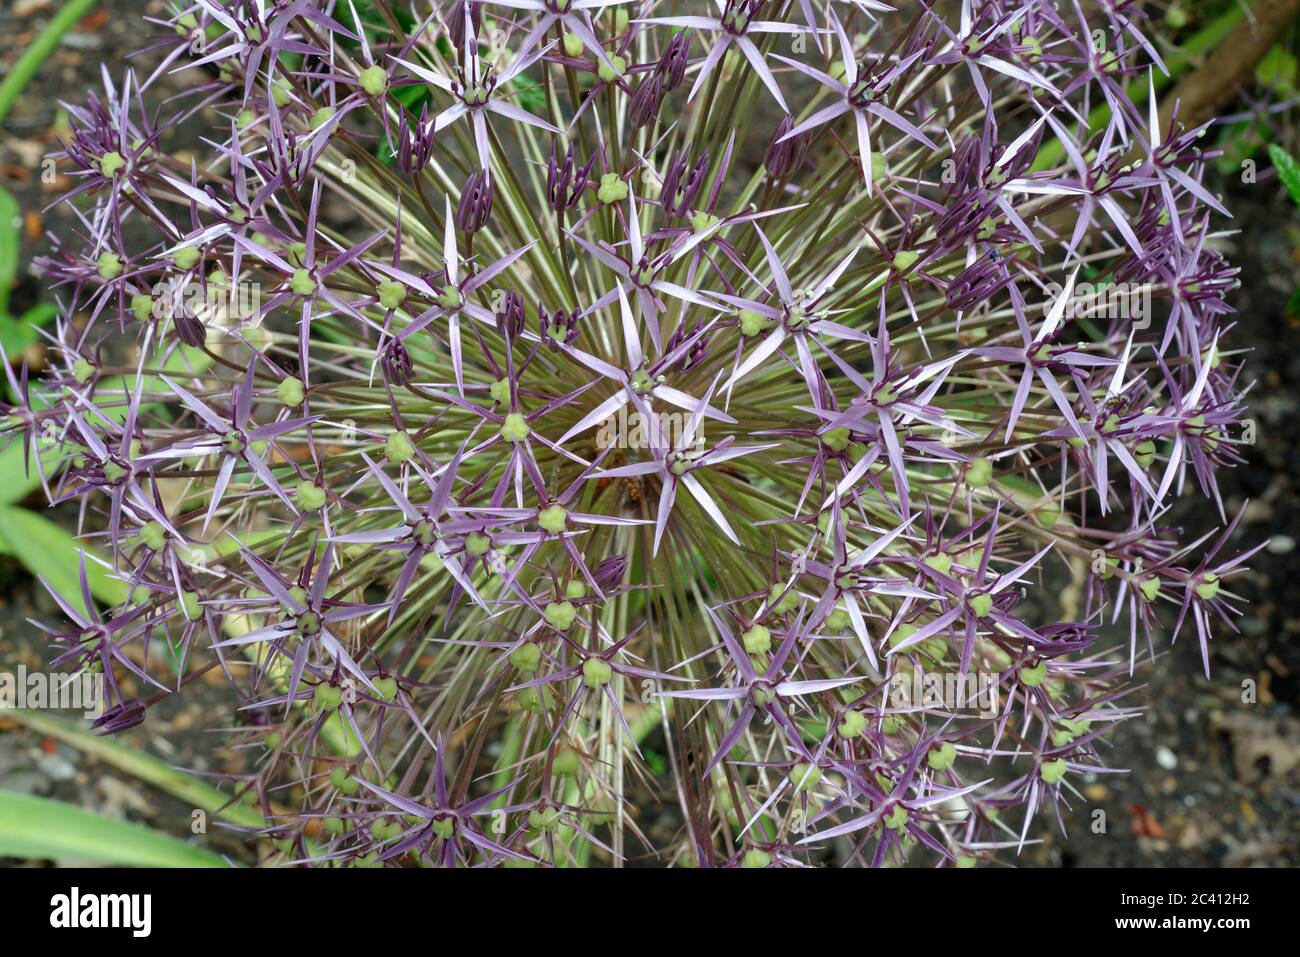 Ein lila Allium Blütenkopf im späten Frühjahr / Frühsommer. Auch bekannt als kultivierte Zwiebel/Knoblauch, produziert es eine große Zierblüte. Stockfoto